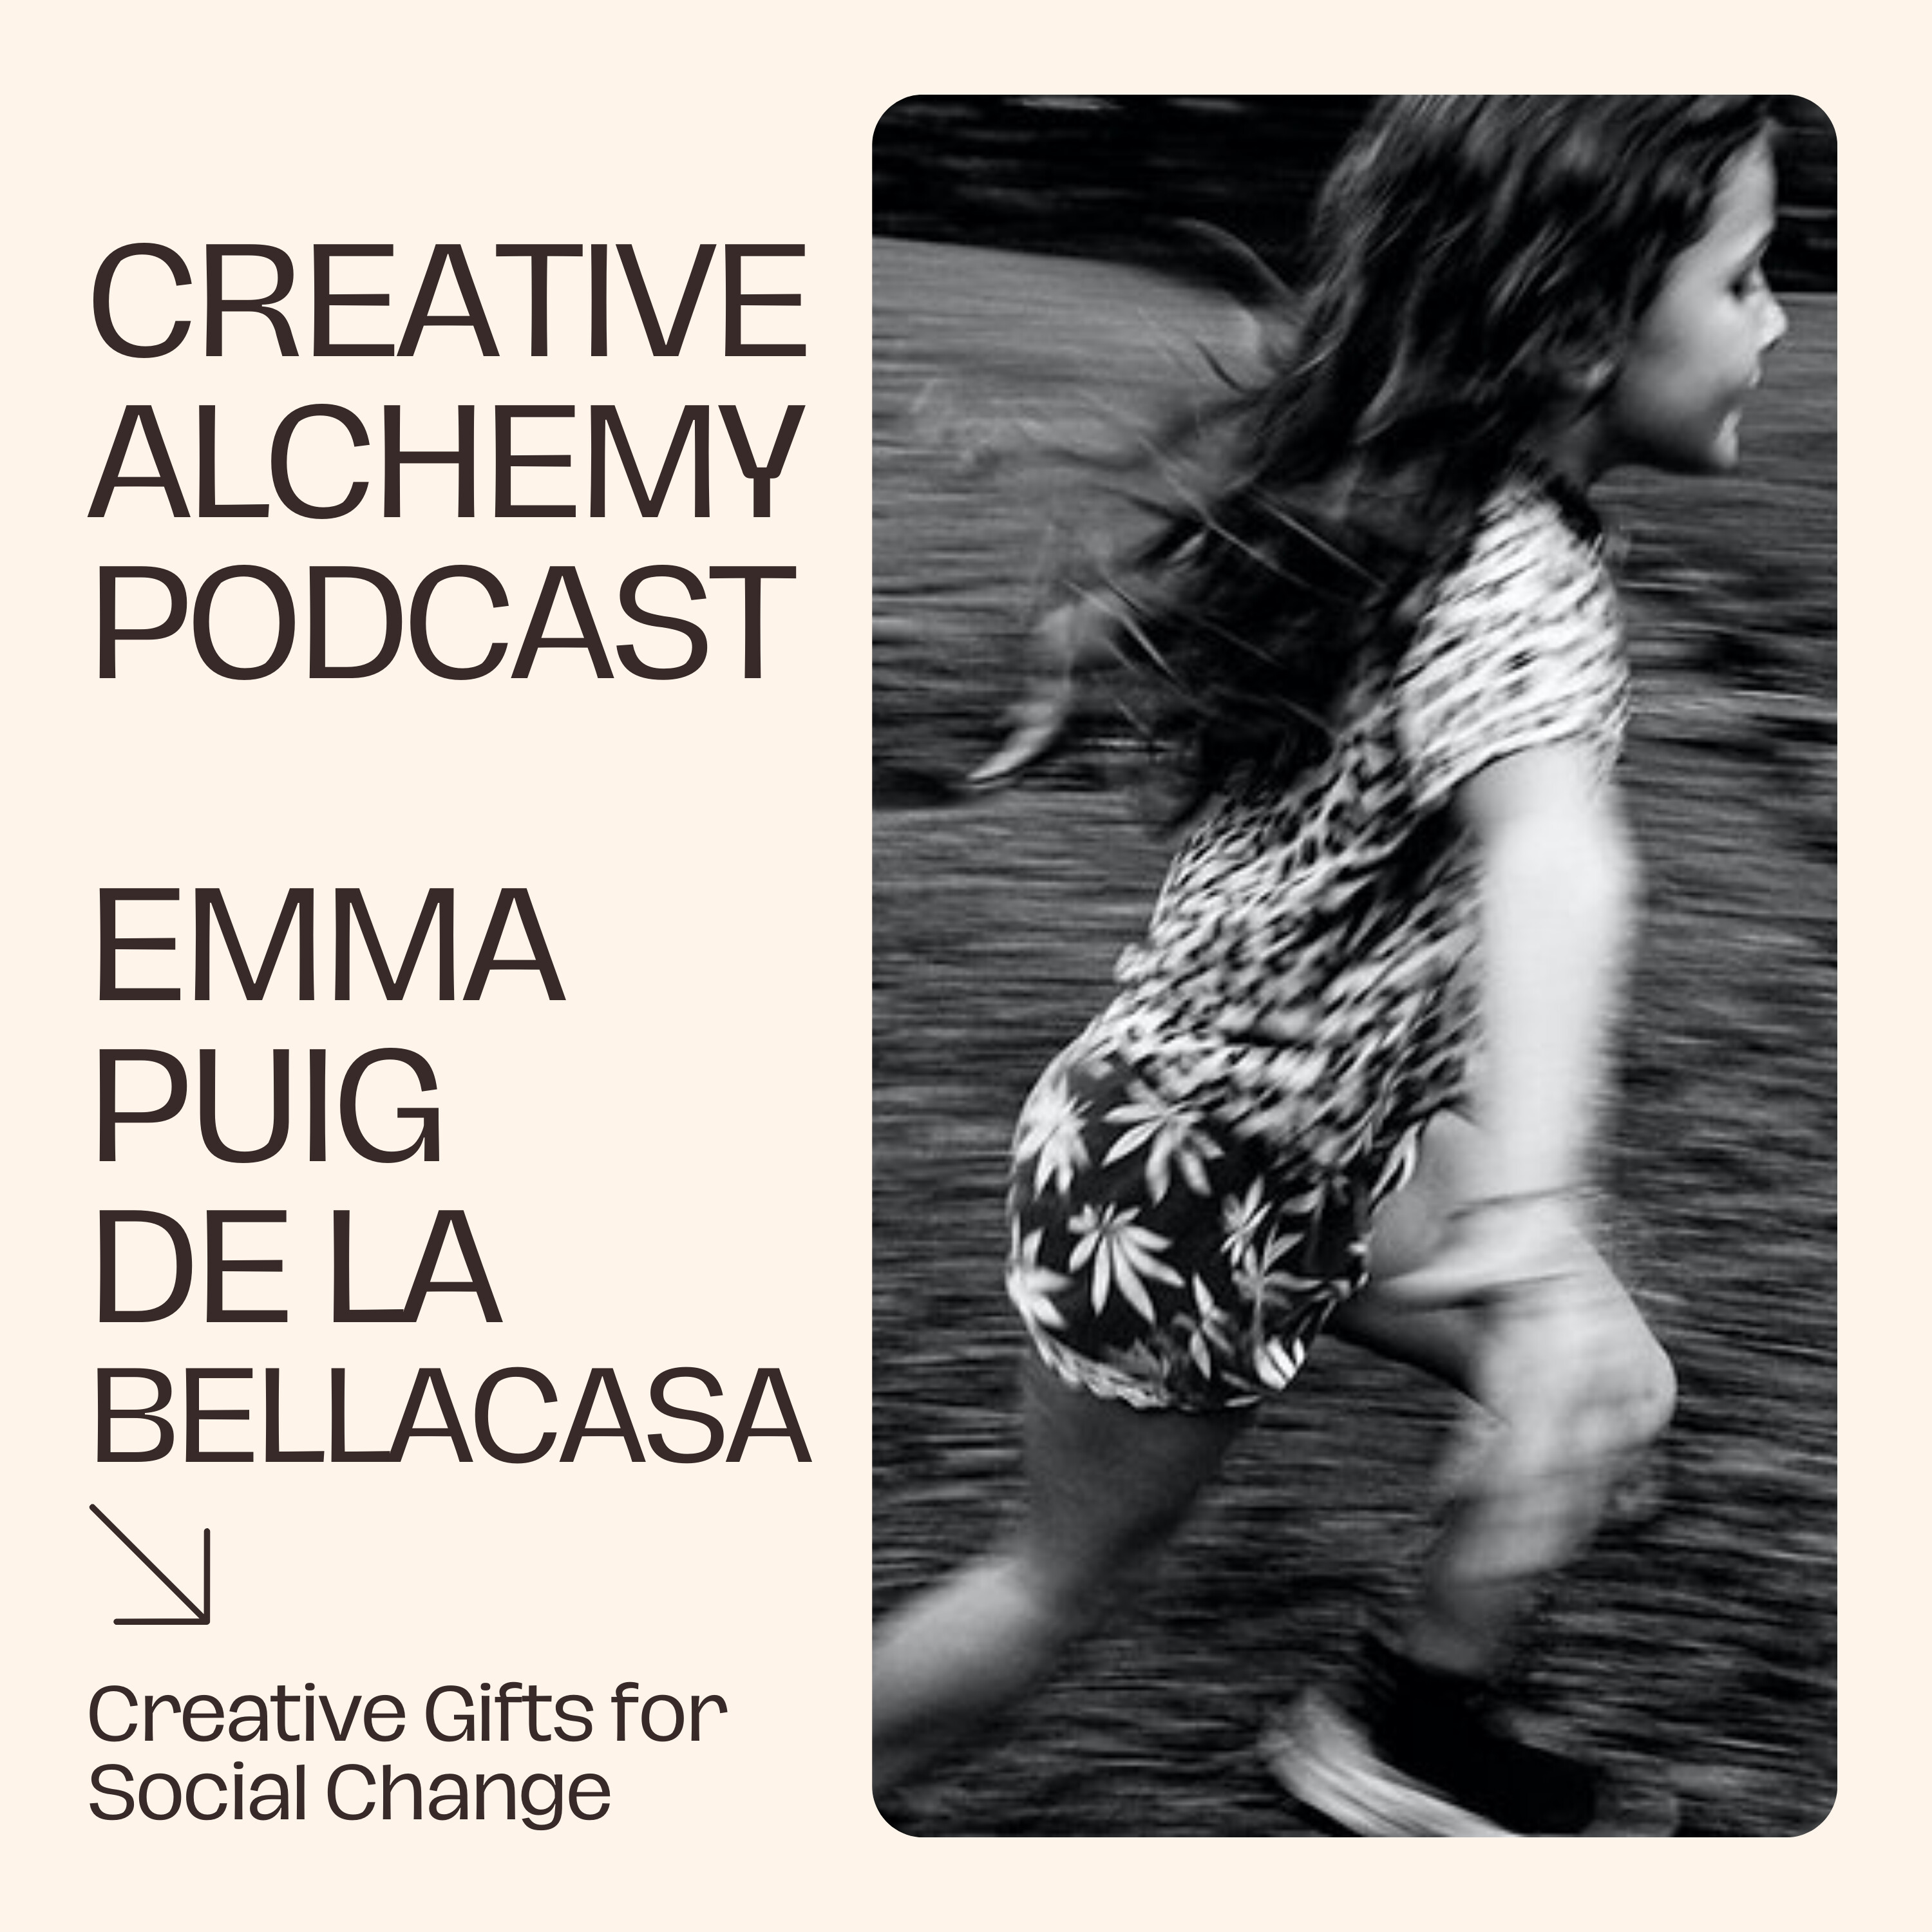 Creative Gifts for Social Change with Emma Puig de la Bellacasa